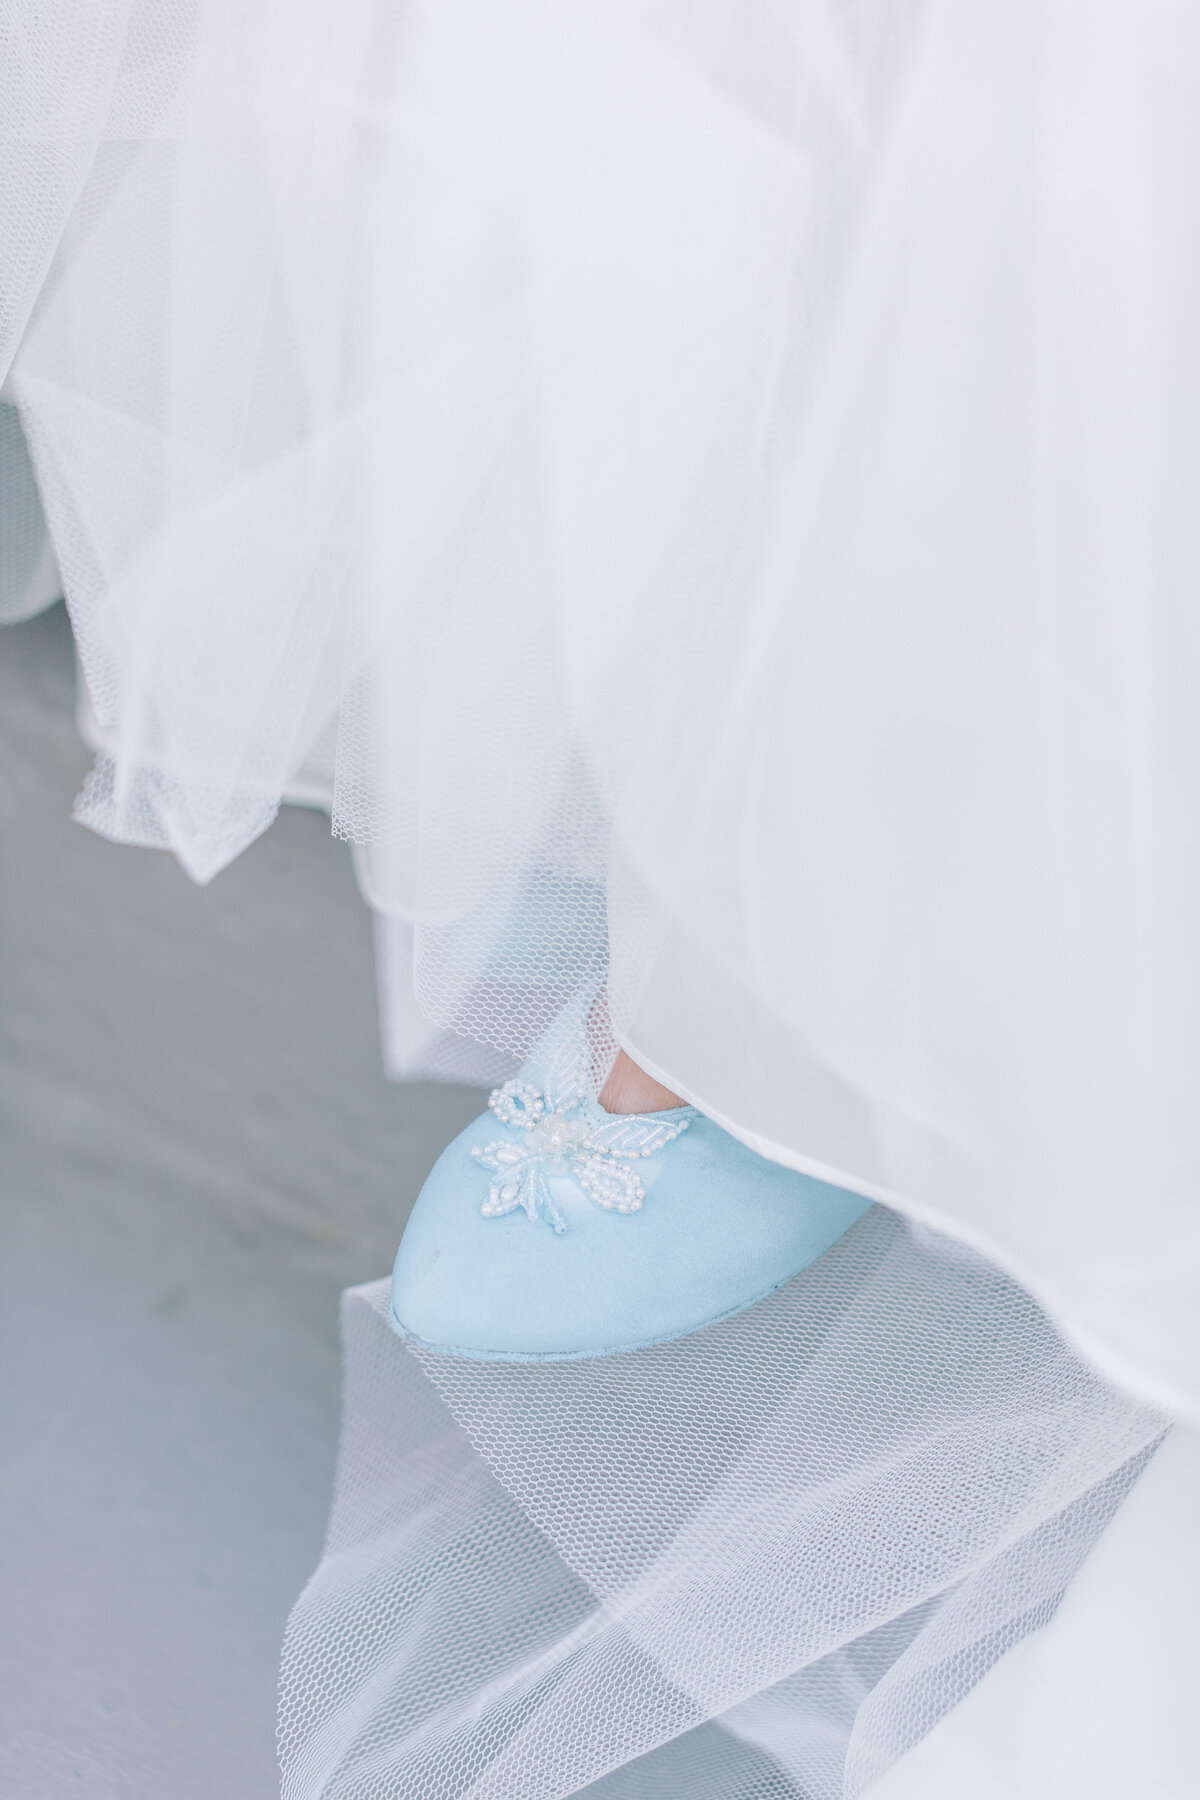 A bride wears a vintage blue shoe.